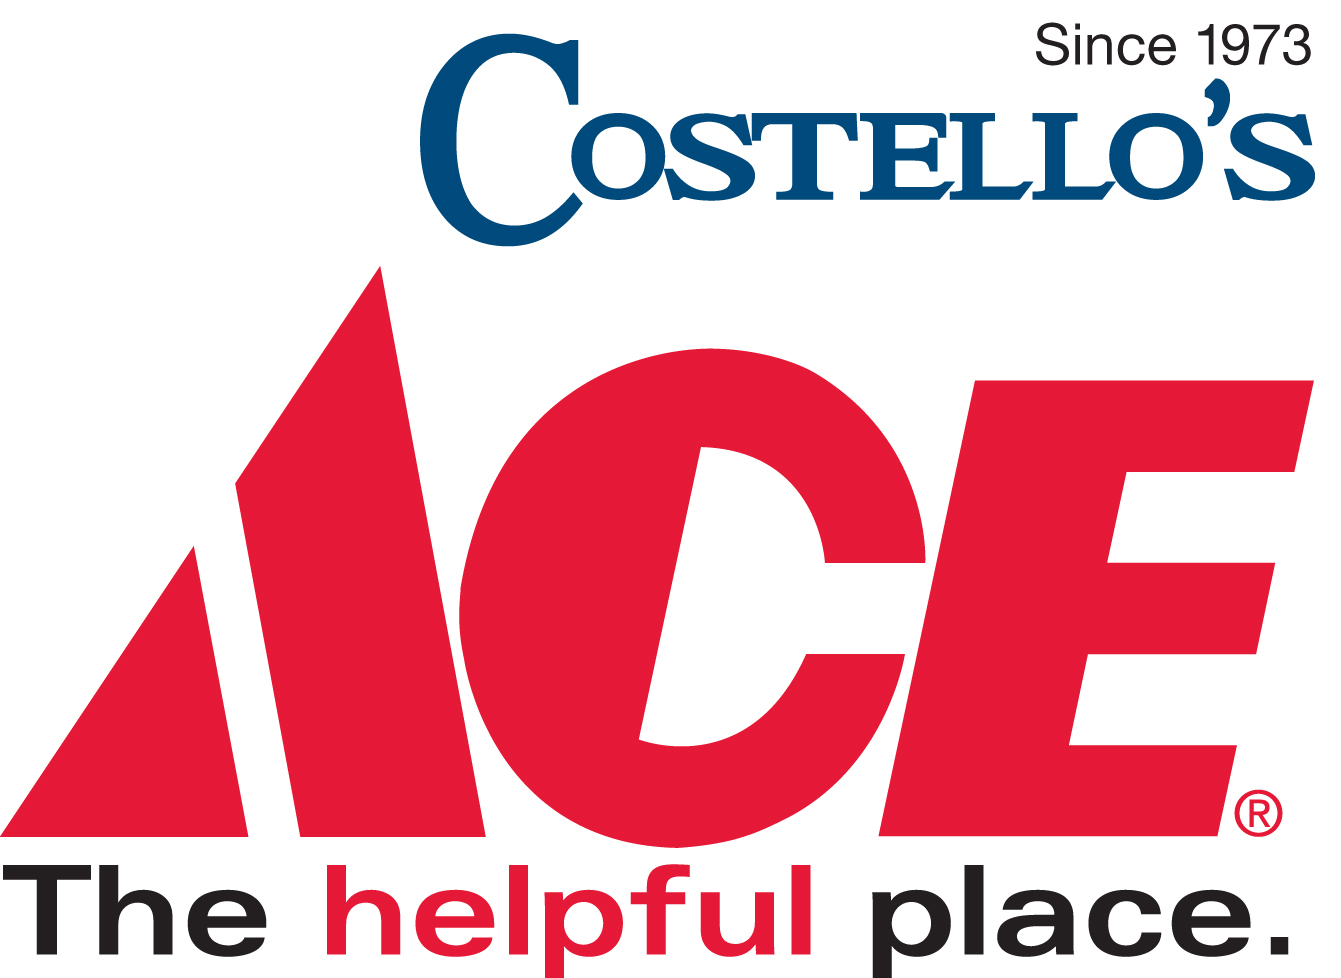 Cockeysville Costello's Ace